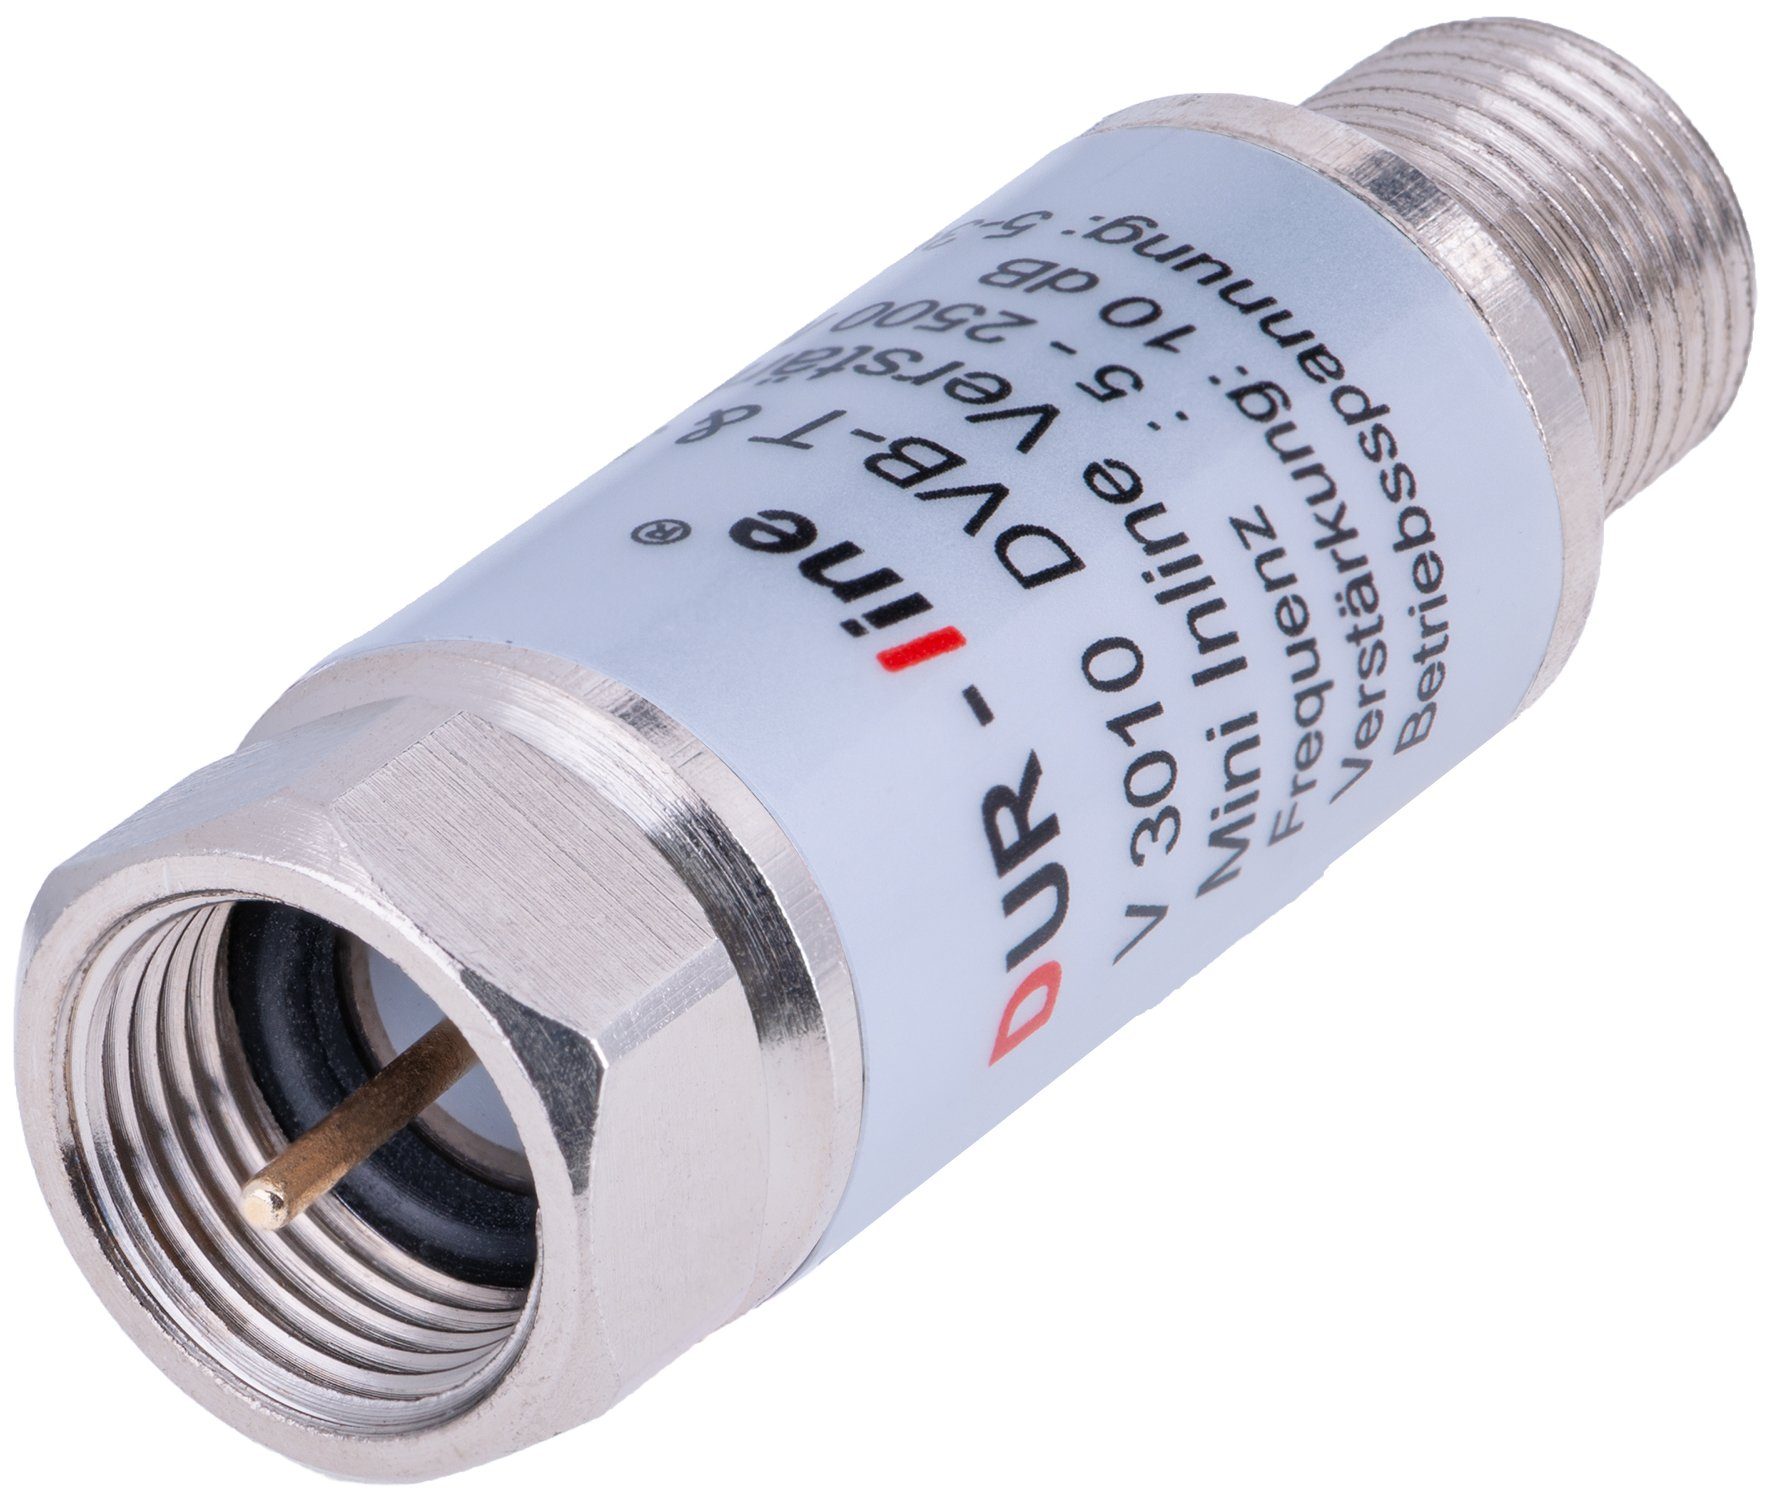 DUR-line DUR-line V3010 - Inlineverstärker SAT-Kabel